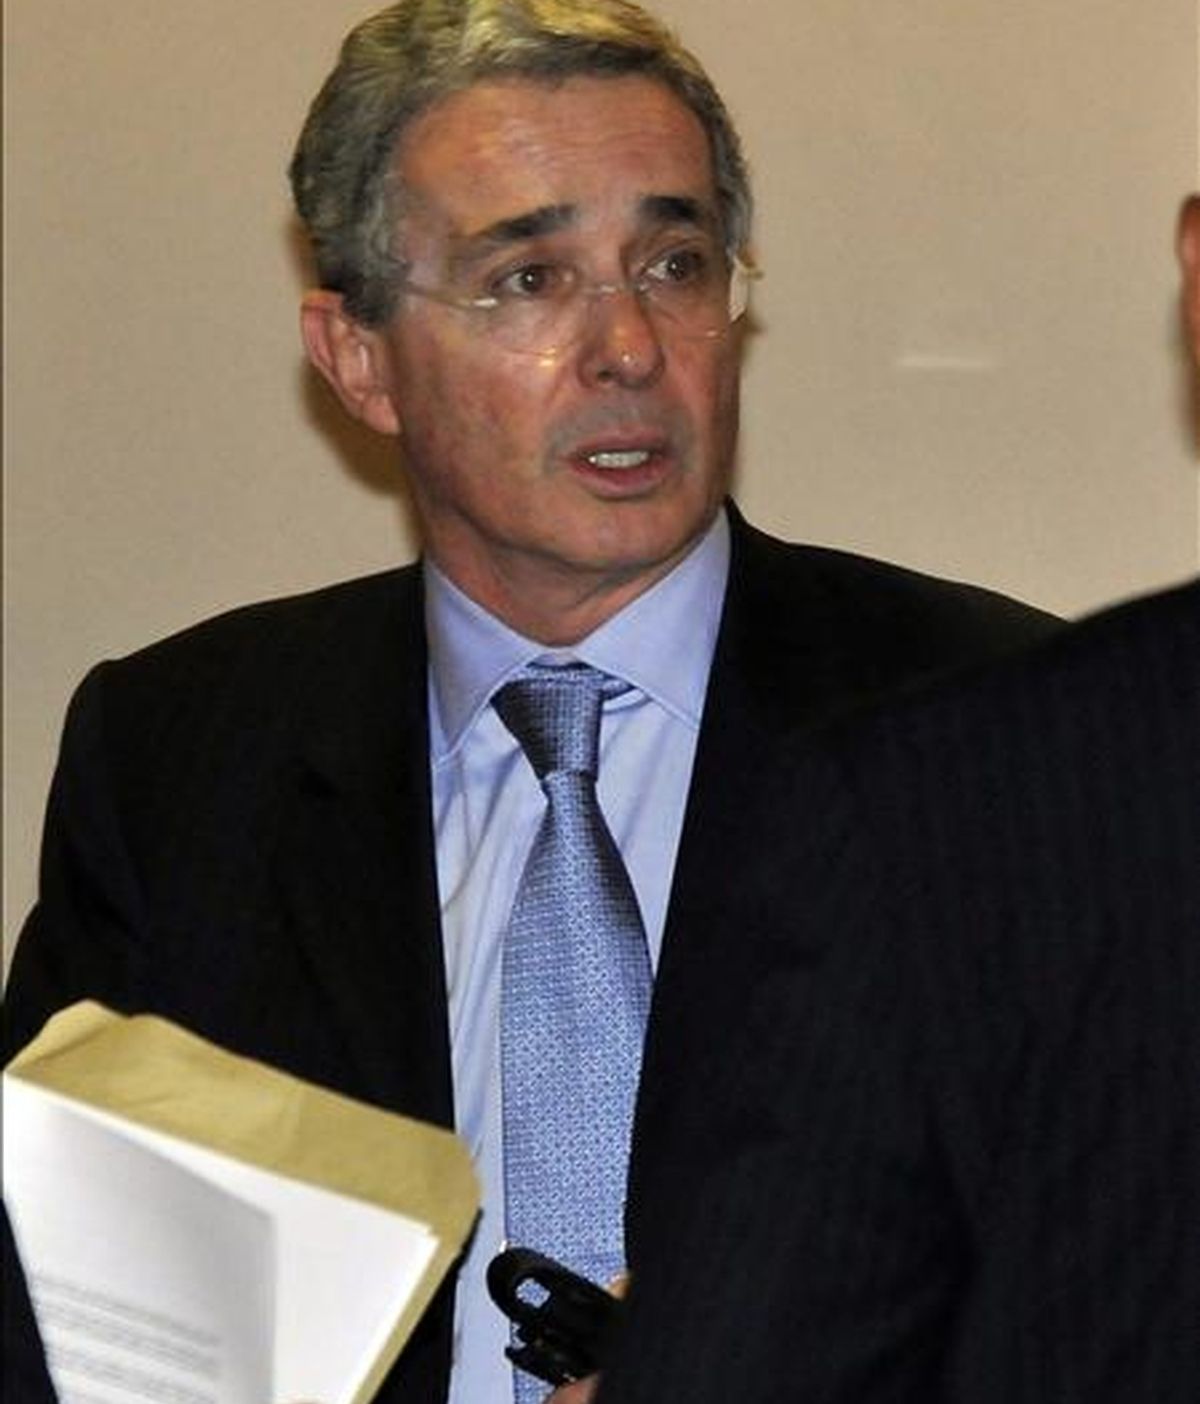 El entorno del ex presidente colombiano, Álvaro Uribe, ordenó escuchas ilegales y espiar a magistrados, periodistas y opositores, según reveló hoy el diario francés "Le Monde", que publica cables de WikiLeaks al respecto. EFE/Archivo